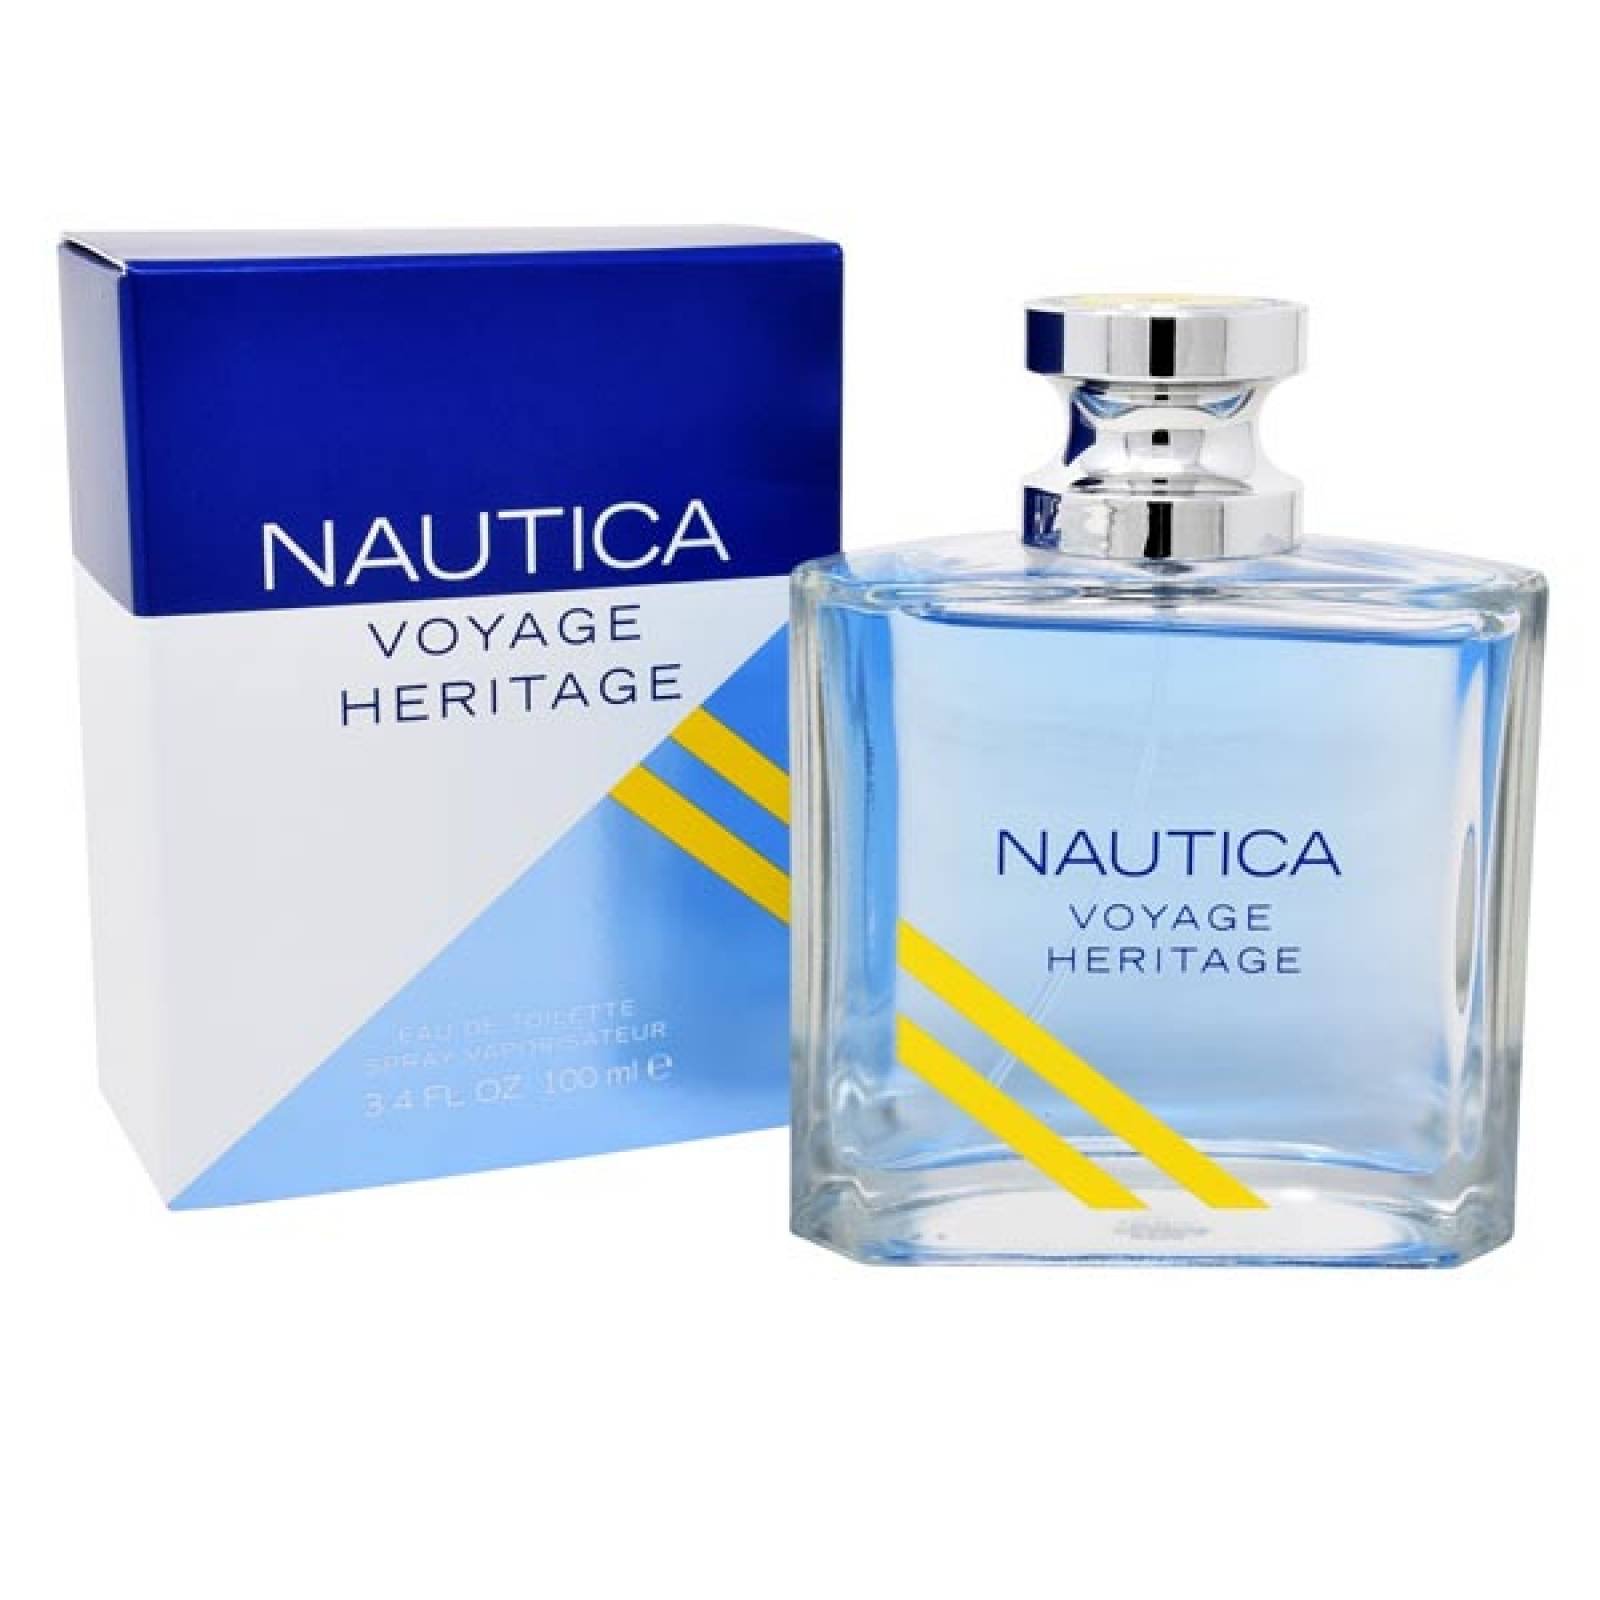 perfume nautica voyage heritage precio